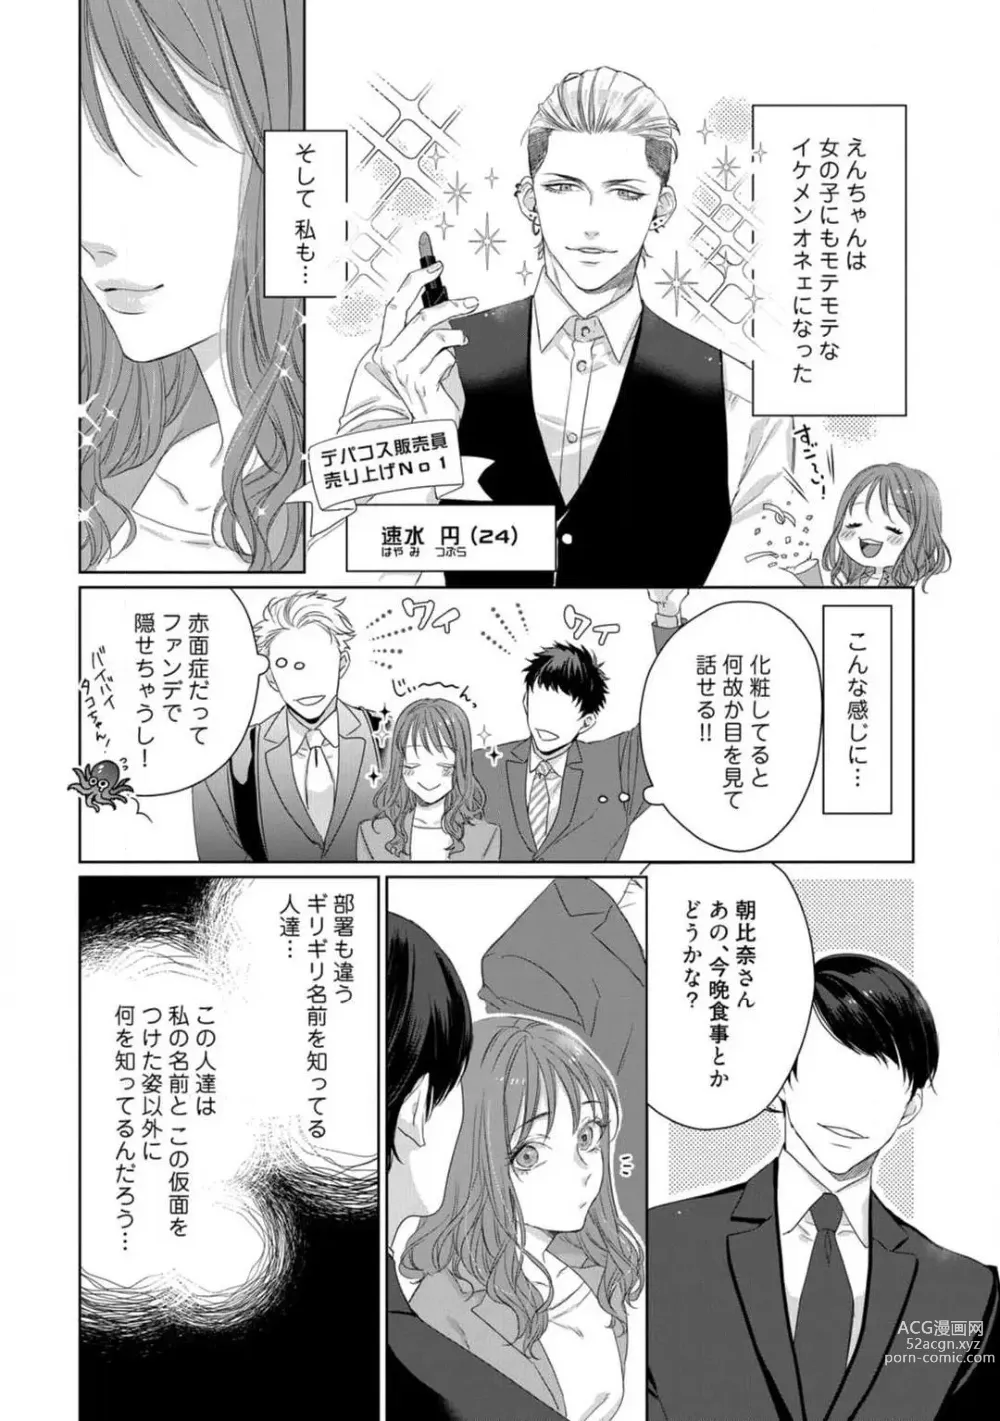 Page 5 of manga Anata no Koisuru Kiraina Watashi~Chp.1-4